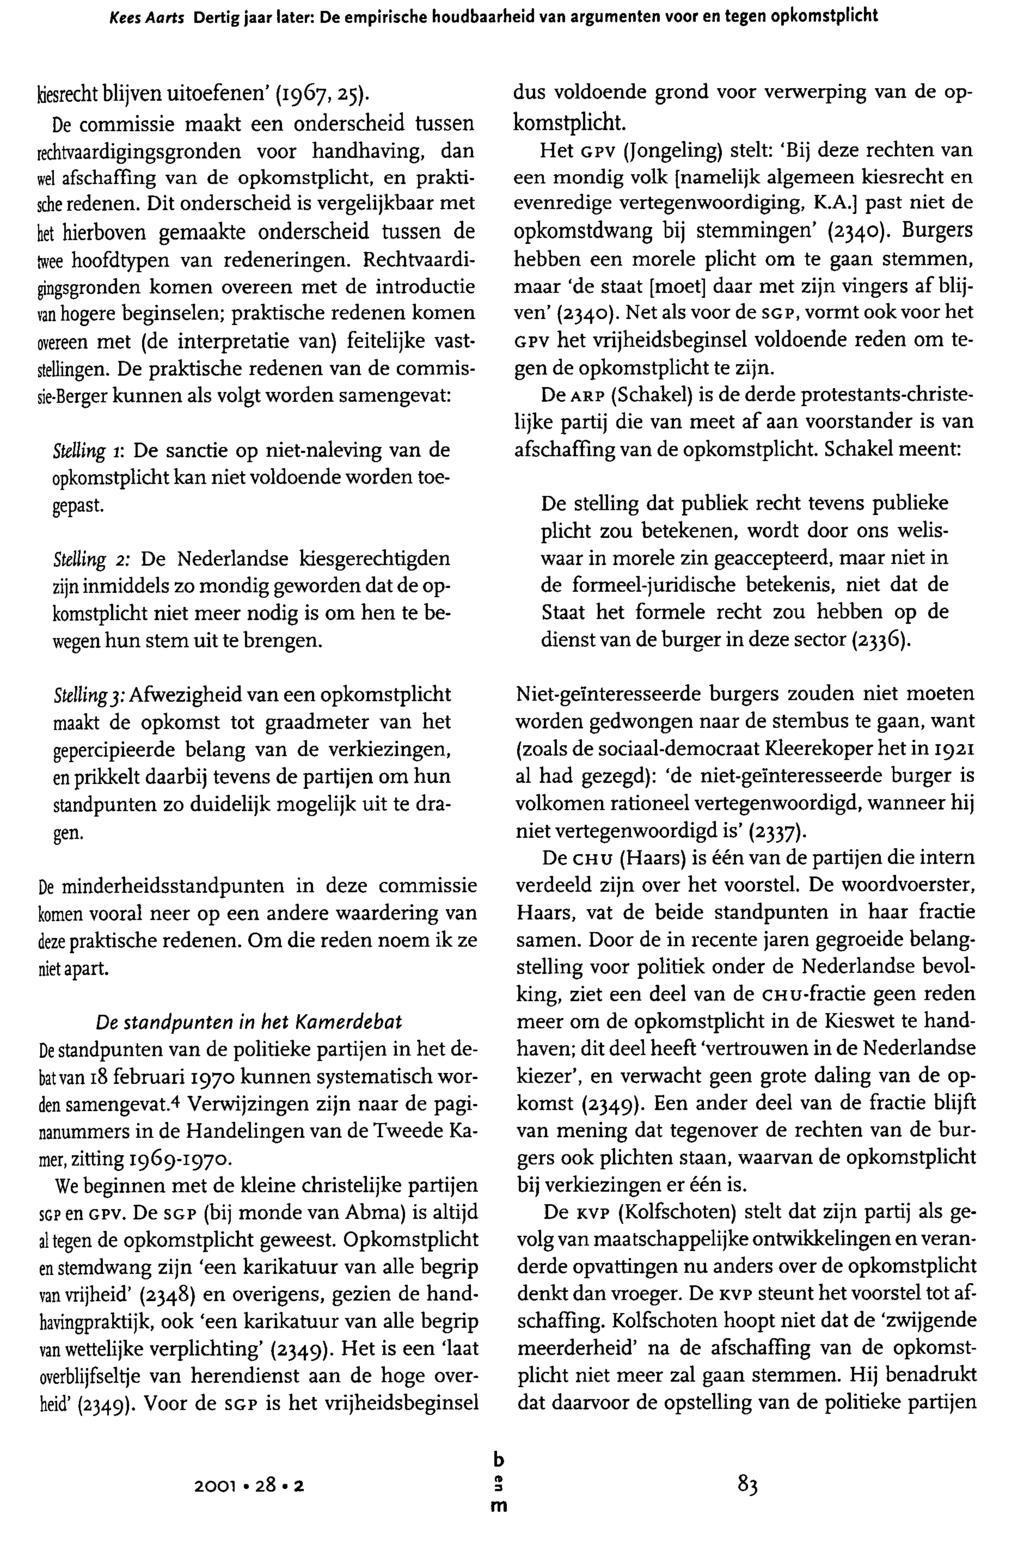 Kees Aarts Dertig jaar later: De epirische houdaarheid van arguenten voor en tegen opkostplicht kiesrecht lijven uitoefenen (1967,25).